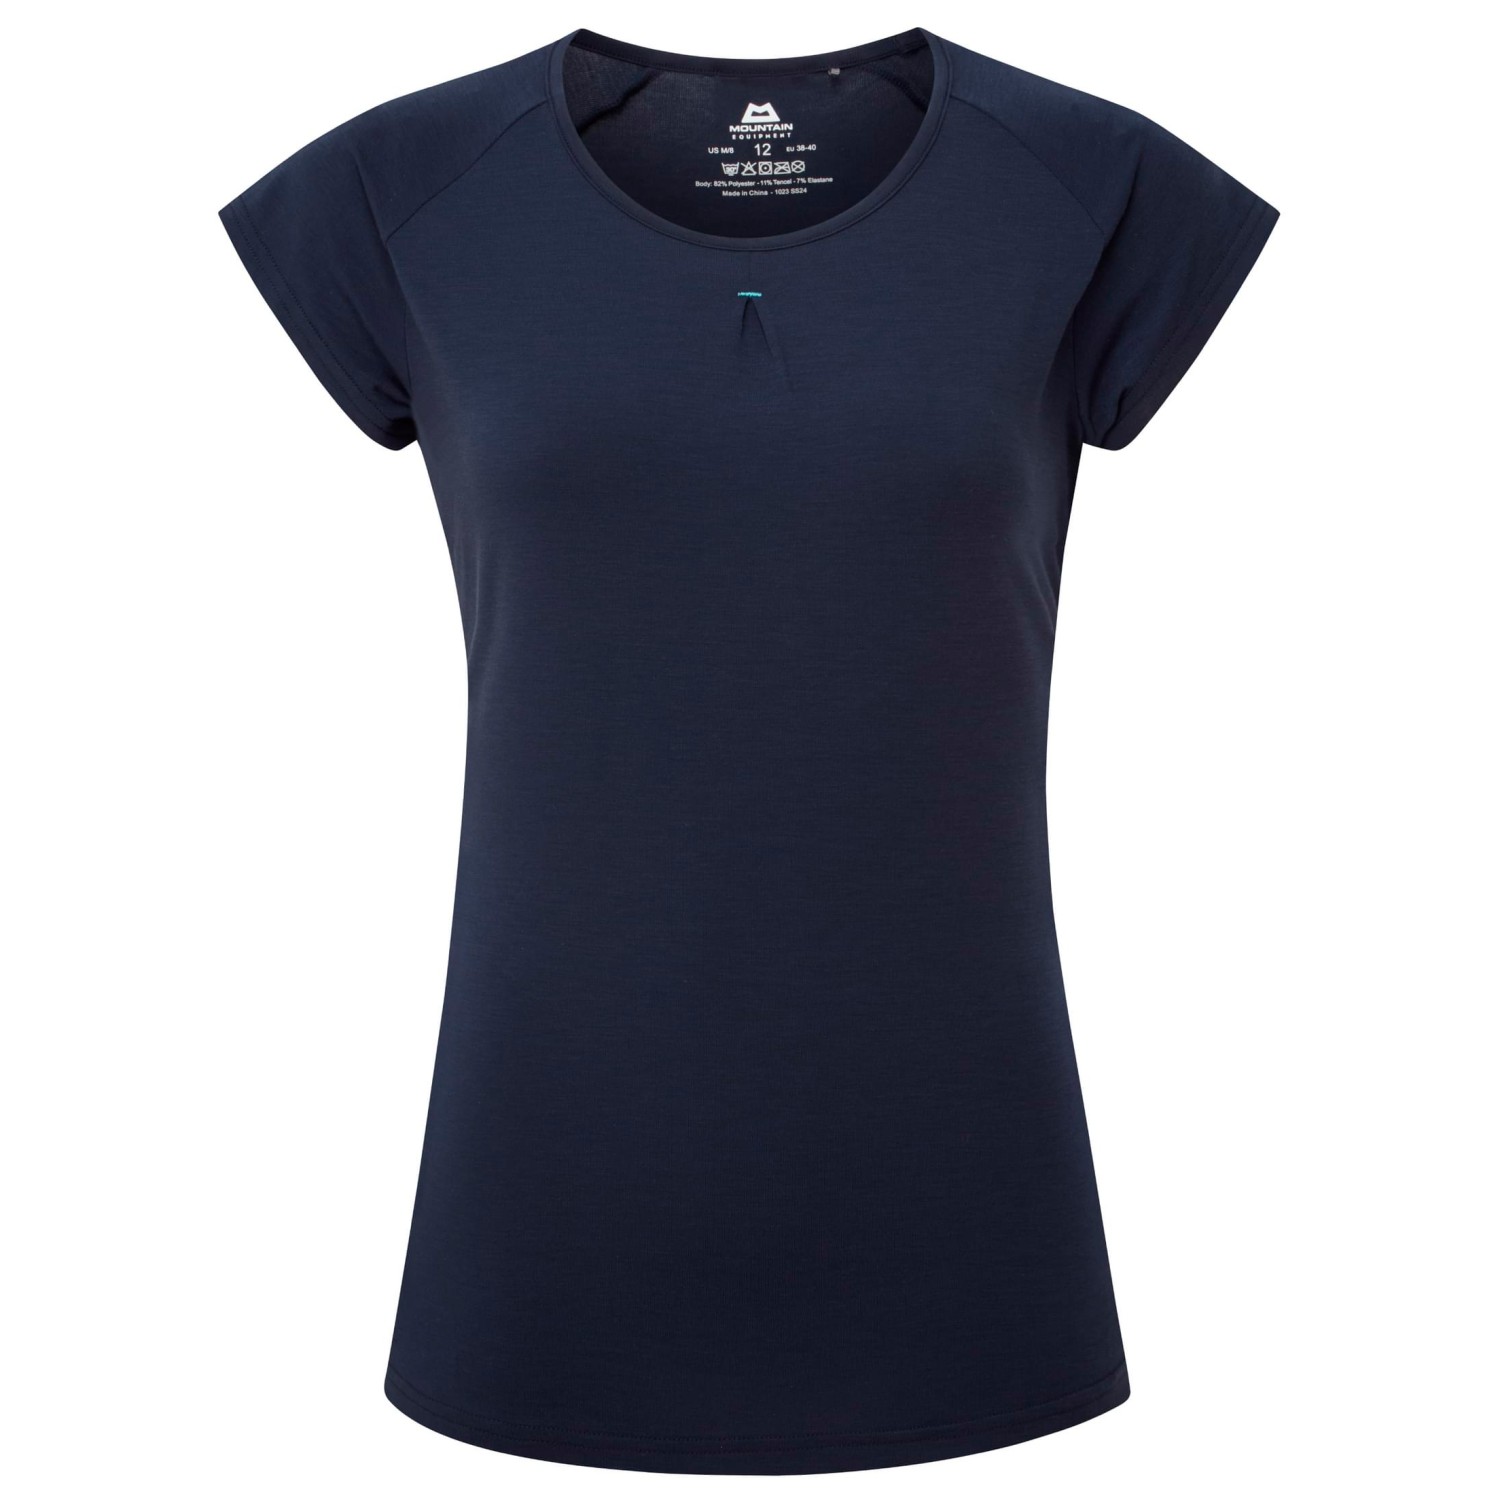 Функциональная рубашка Mountain Equipment Women's Equinox Tee, цвет Cosmos